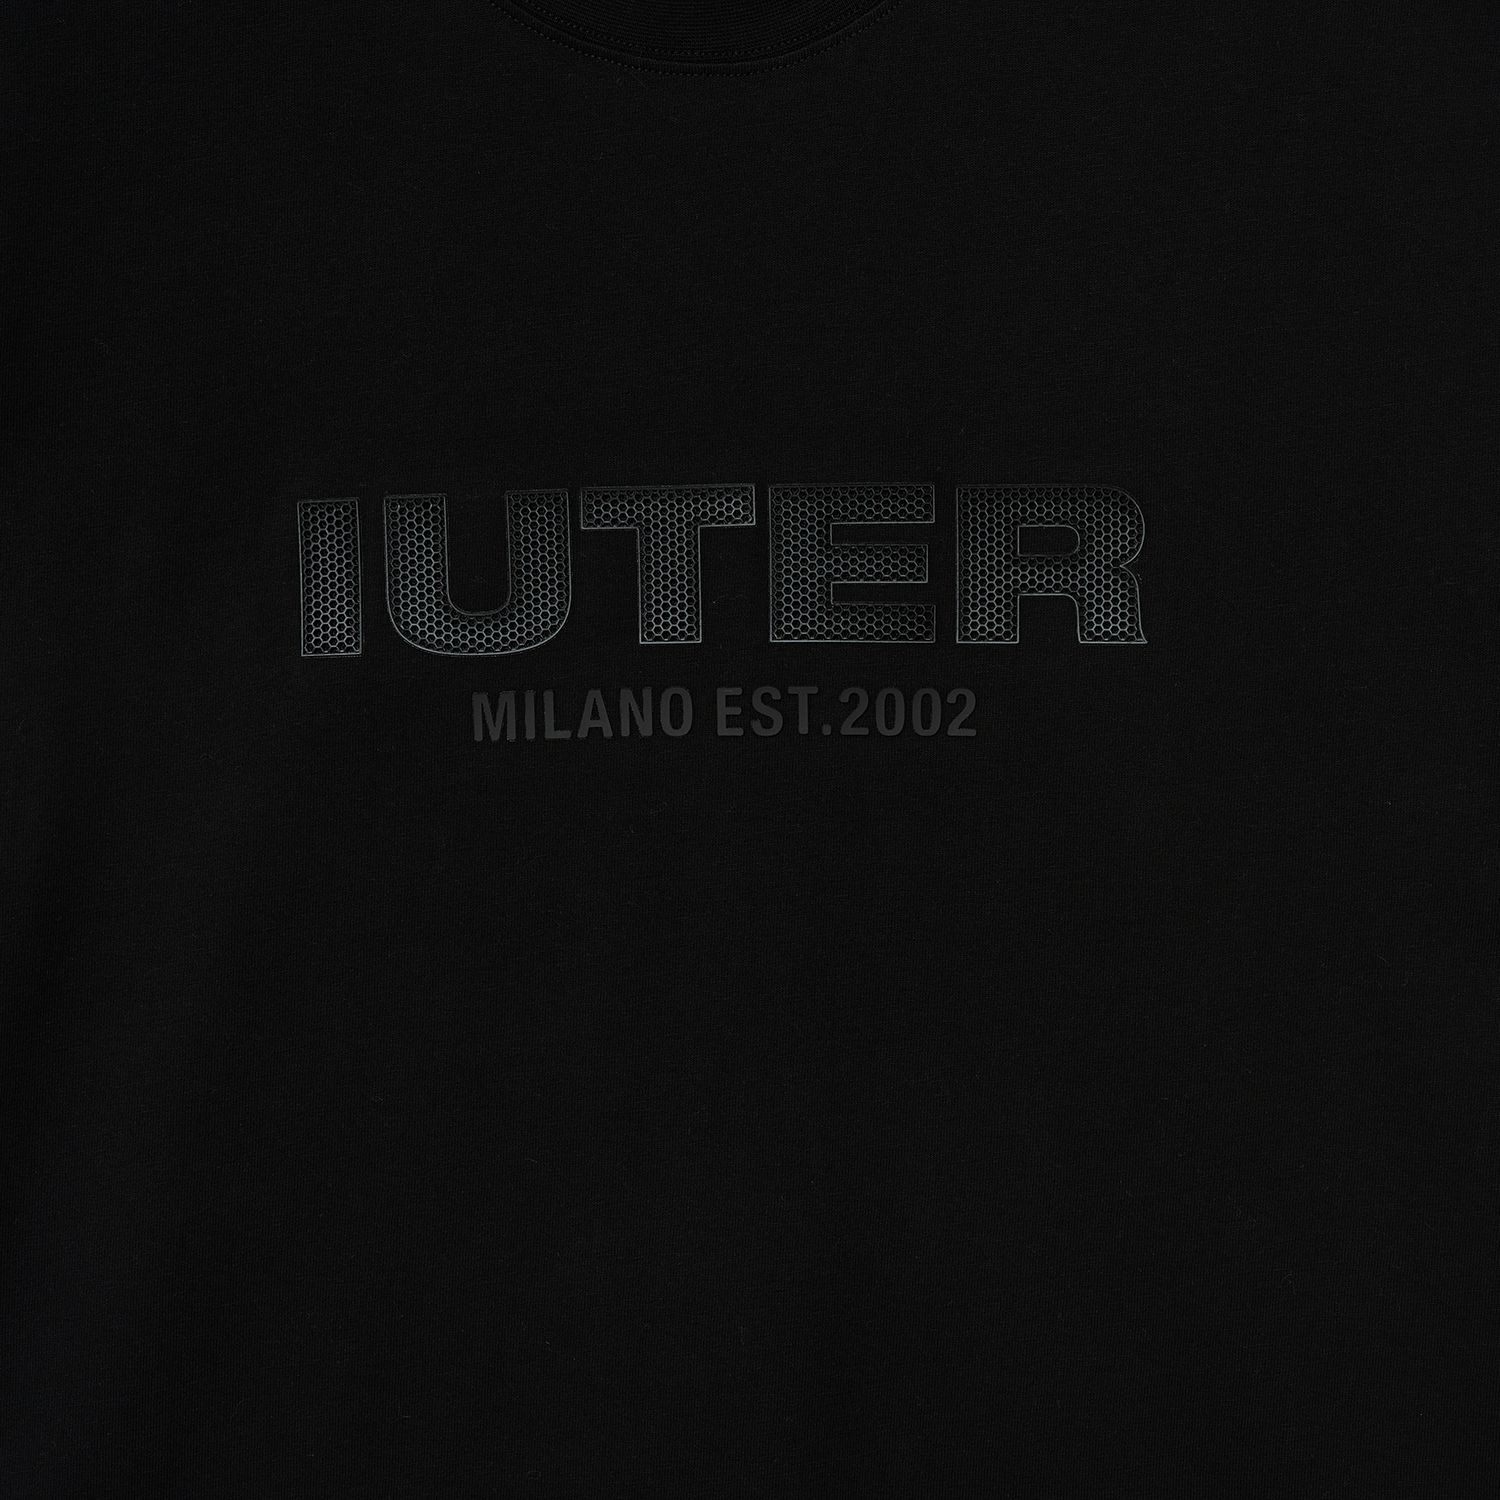 S/S Est 2002 T-shirt (Black)